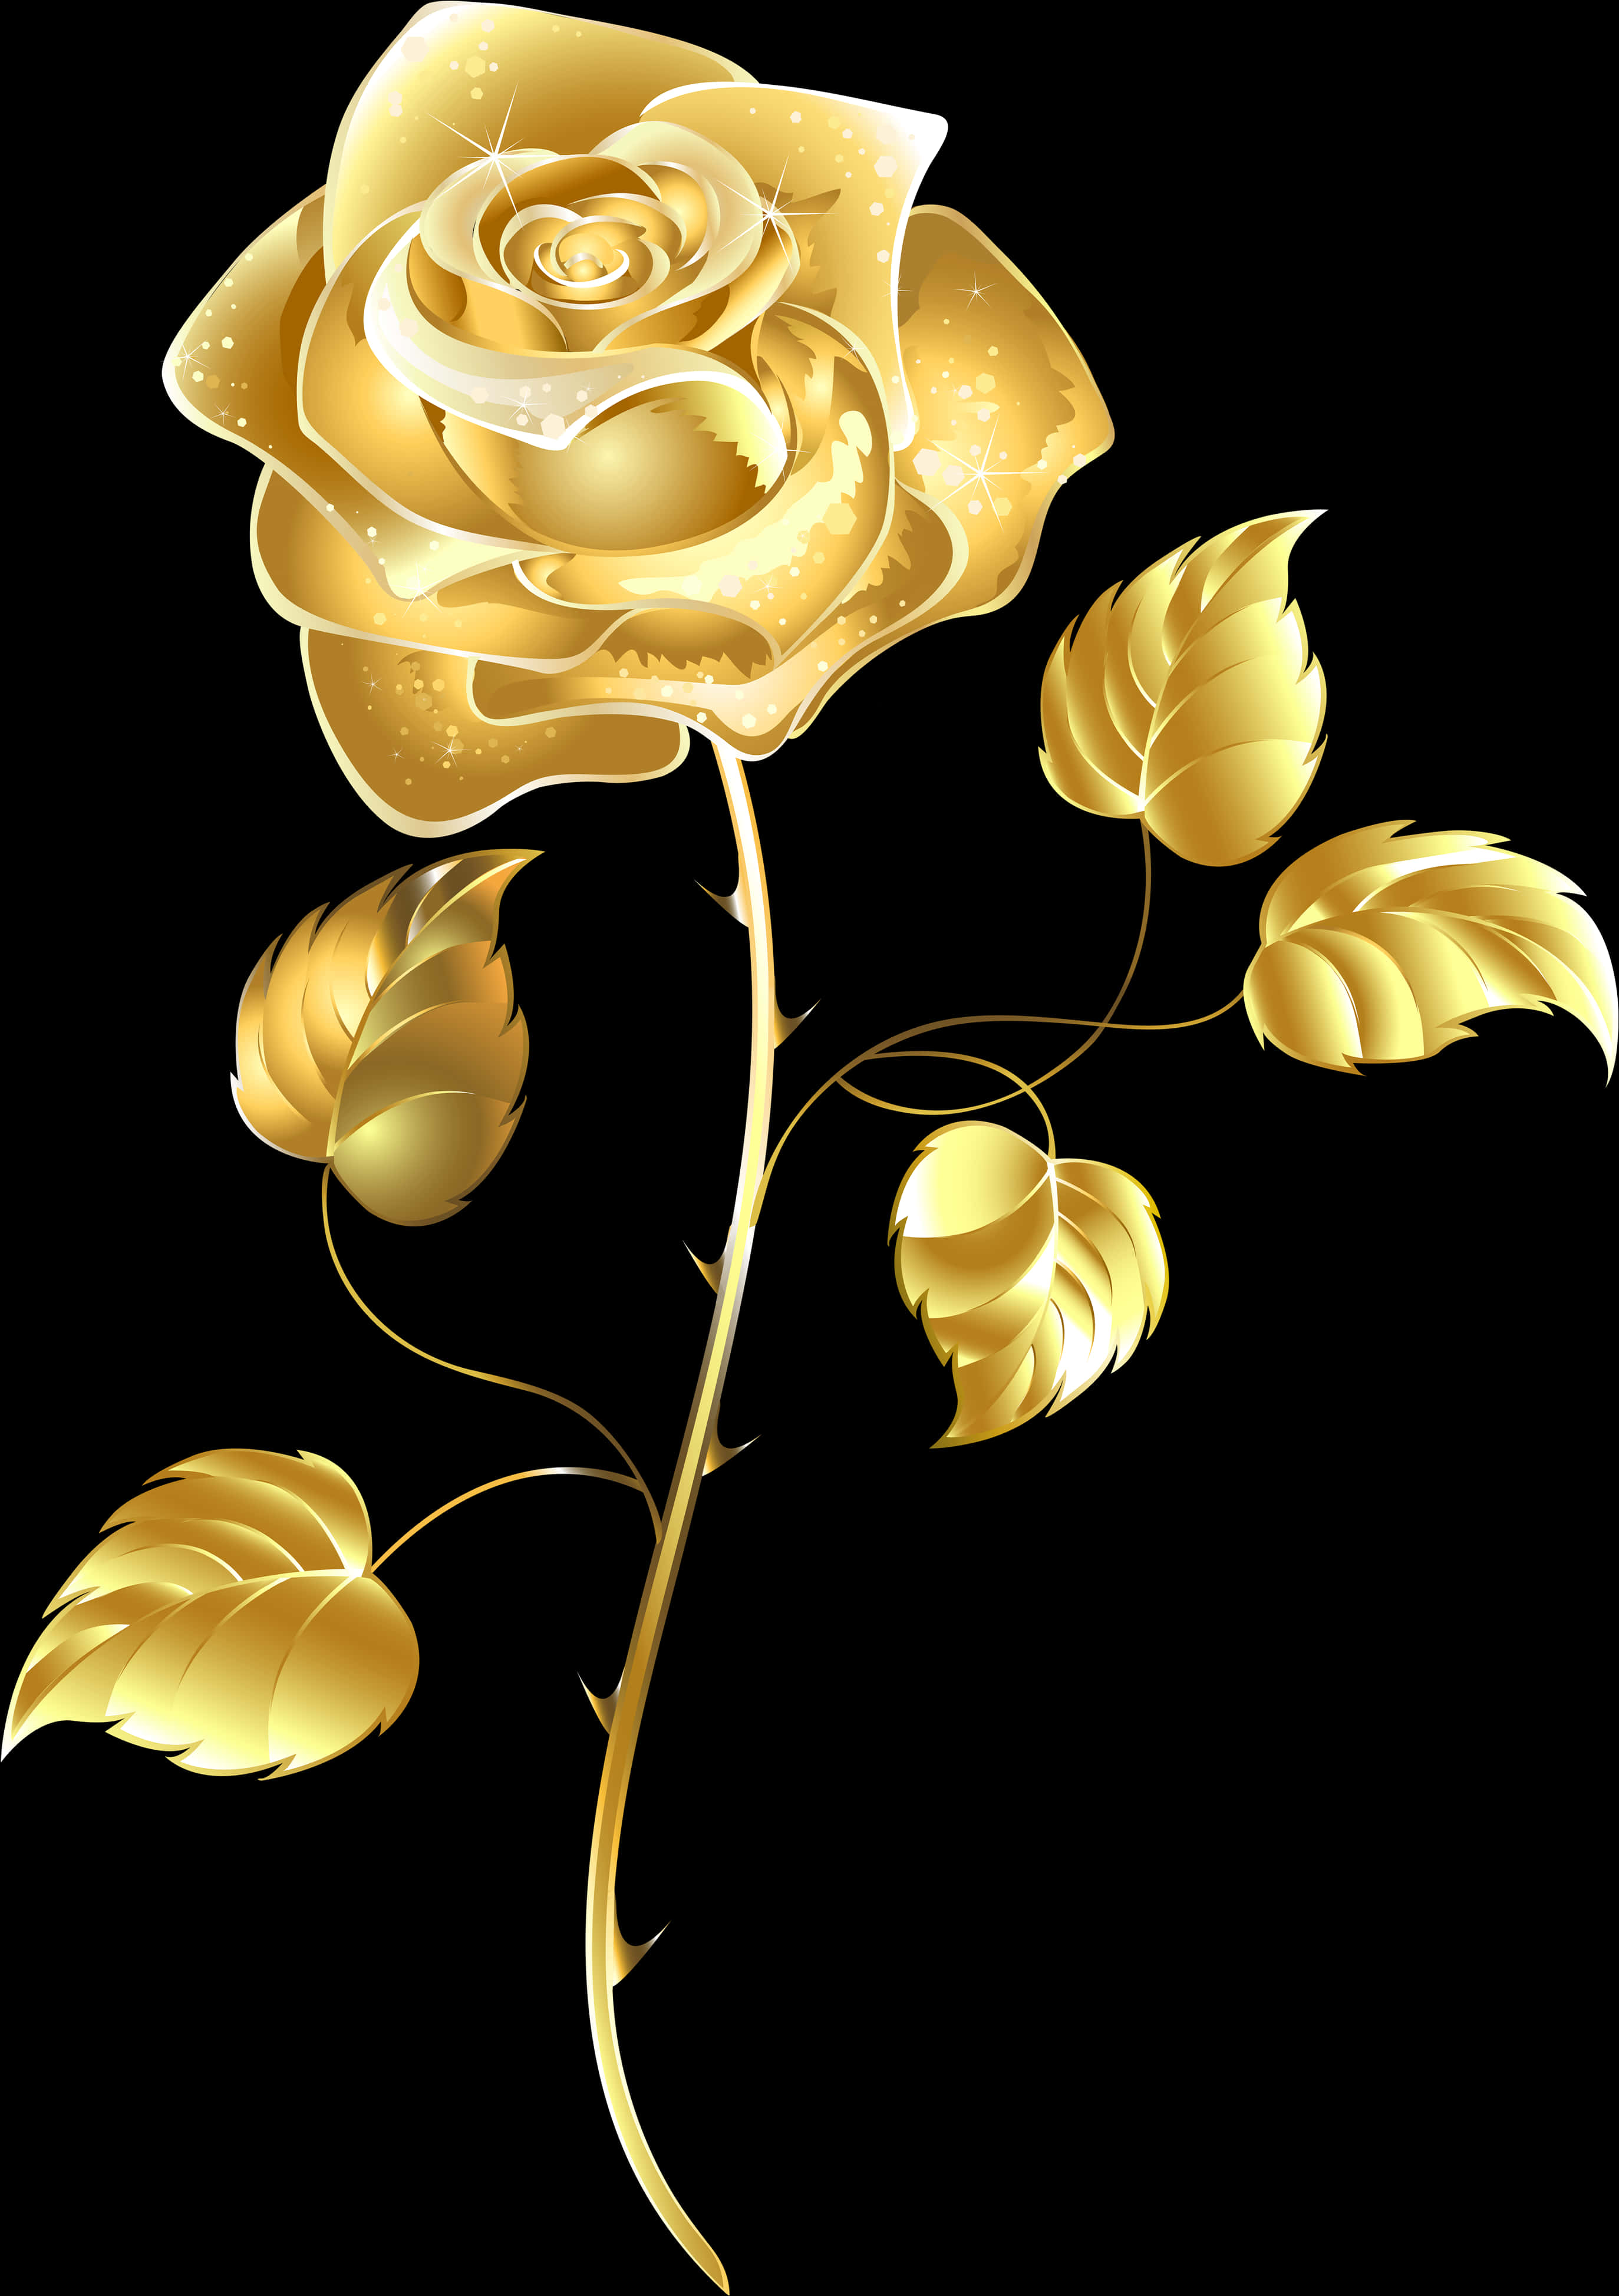 Golden Rose Transparent Image - Gold Flower Transparent Background, Hd Png Download